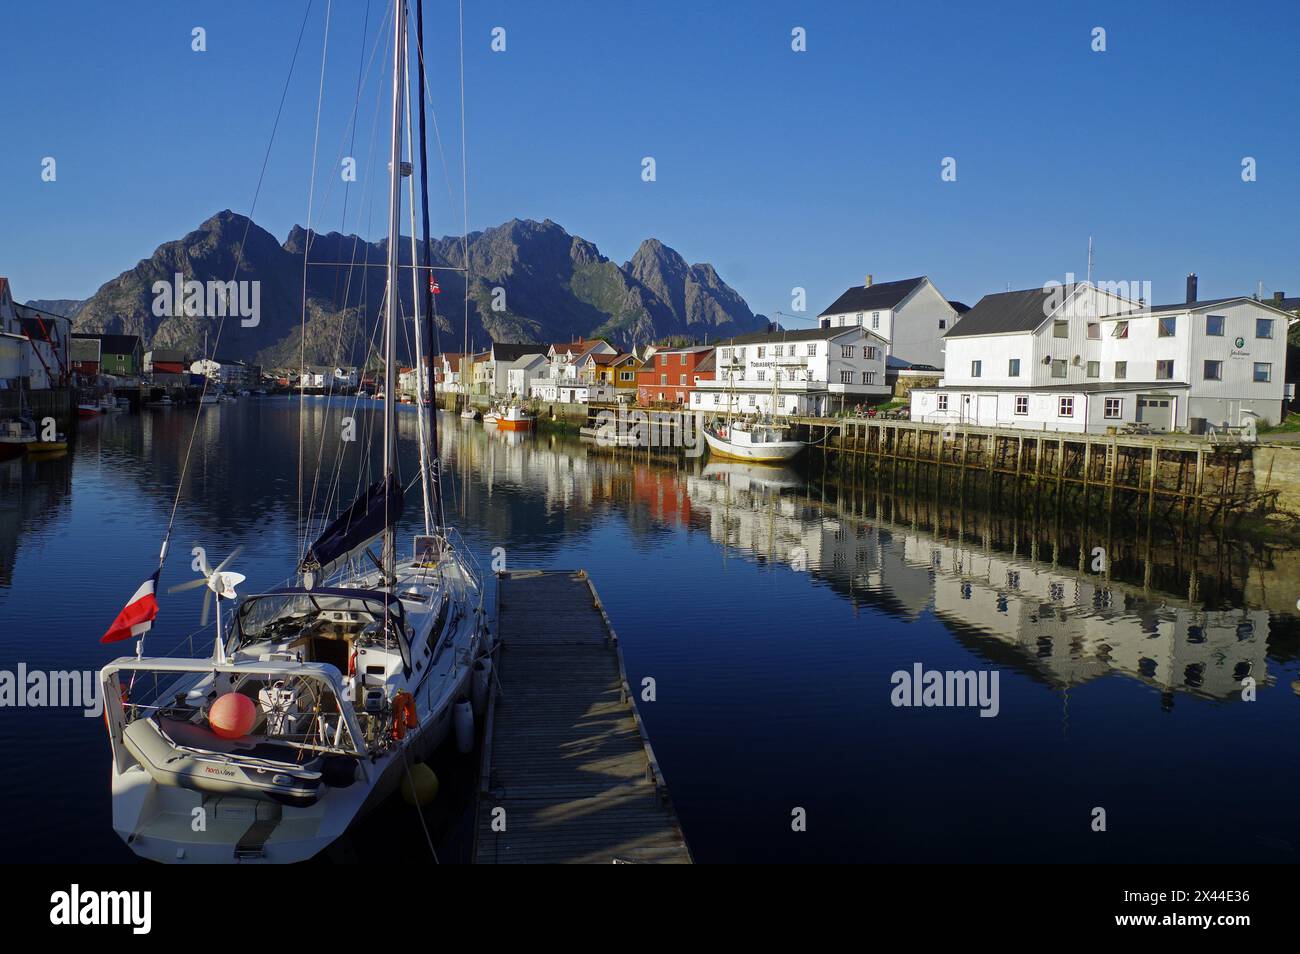 Le navi a vela e le case di legno si riflettono nelle acque calme di un piccolo porto, Rorbuer, Idyll, Henningsvaer, Vagan, Nordland, Norvegia Foto Stock